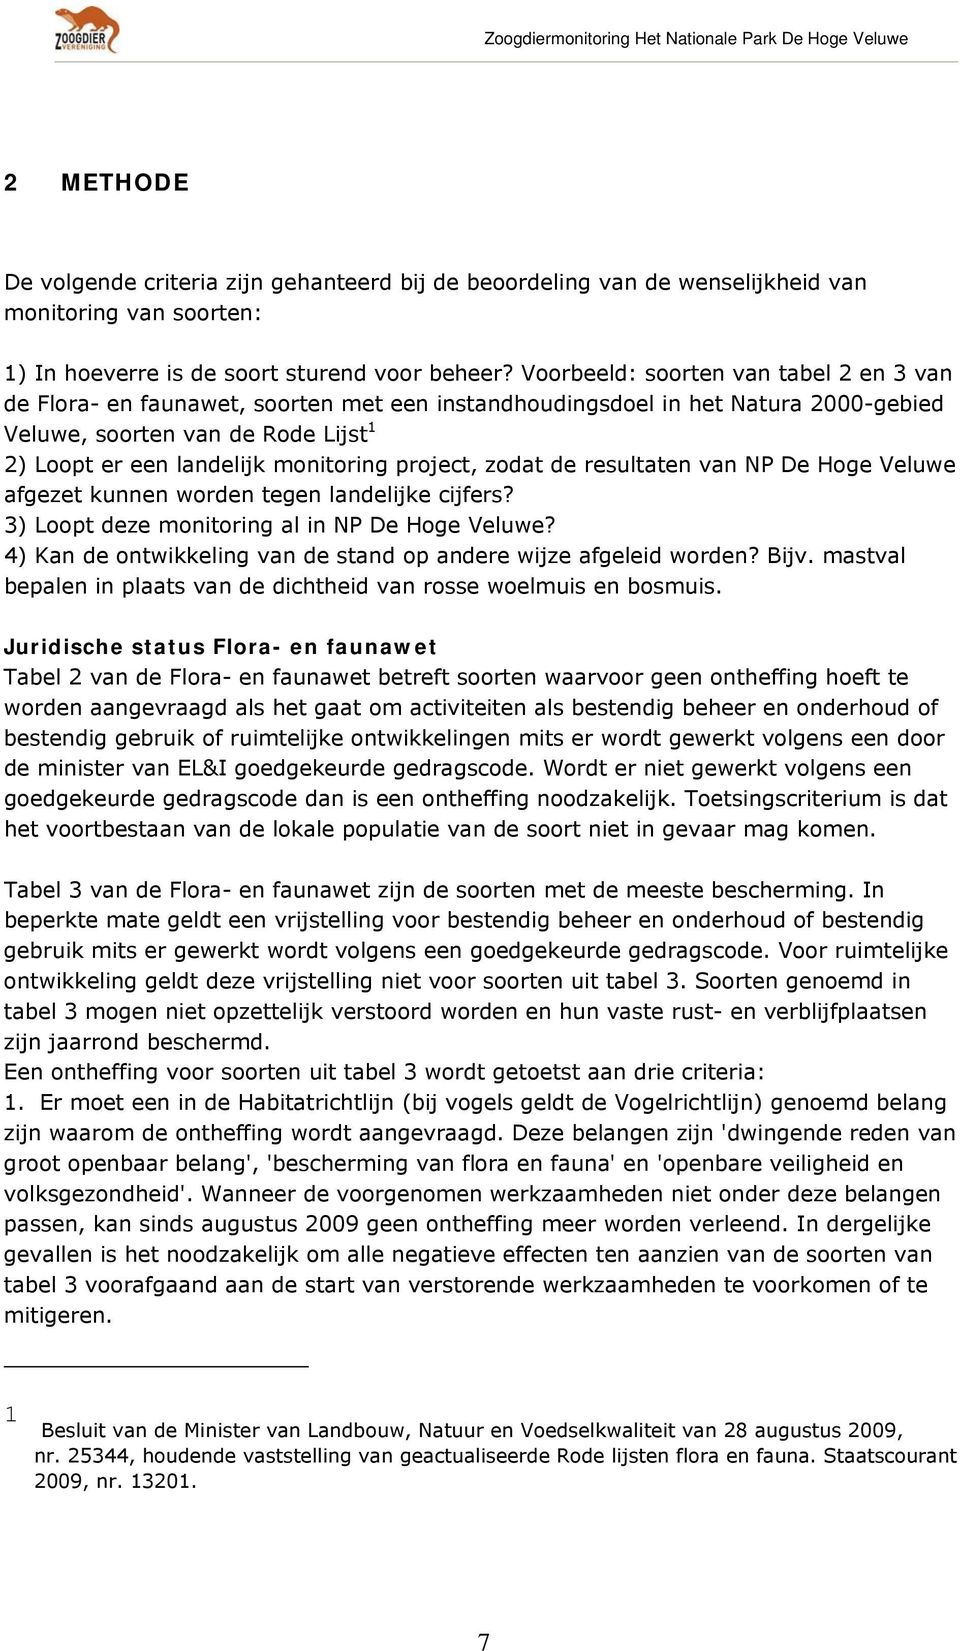 project, zodat de resultaten van NP De Hoge Veluwe afgezet kunnen worden tegen landelijke cijfers? 3) Loopt deze monitoring al in NP De Hoge Veluwe?